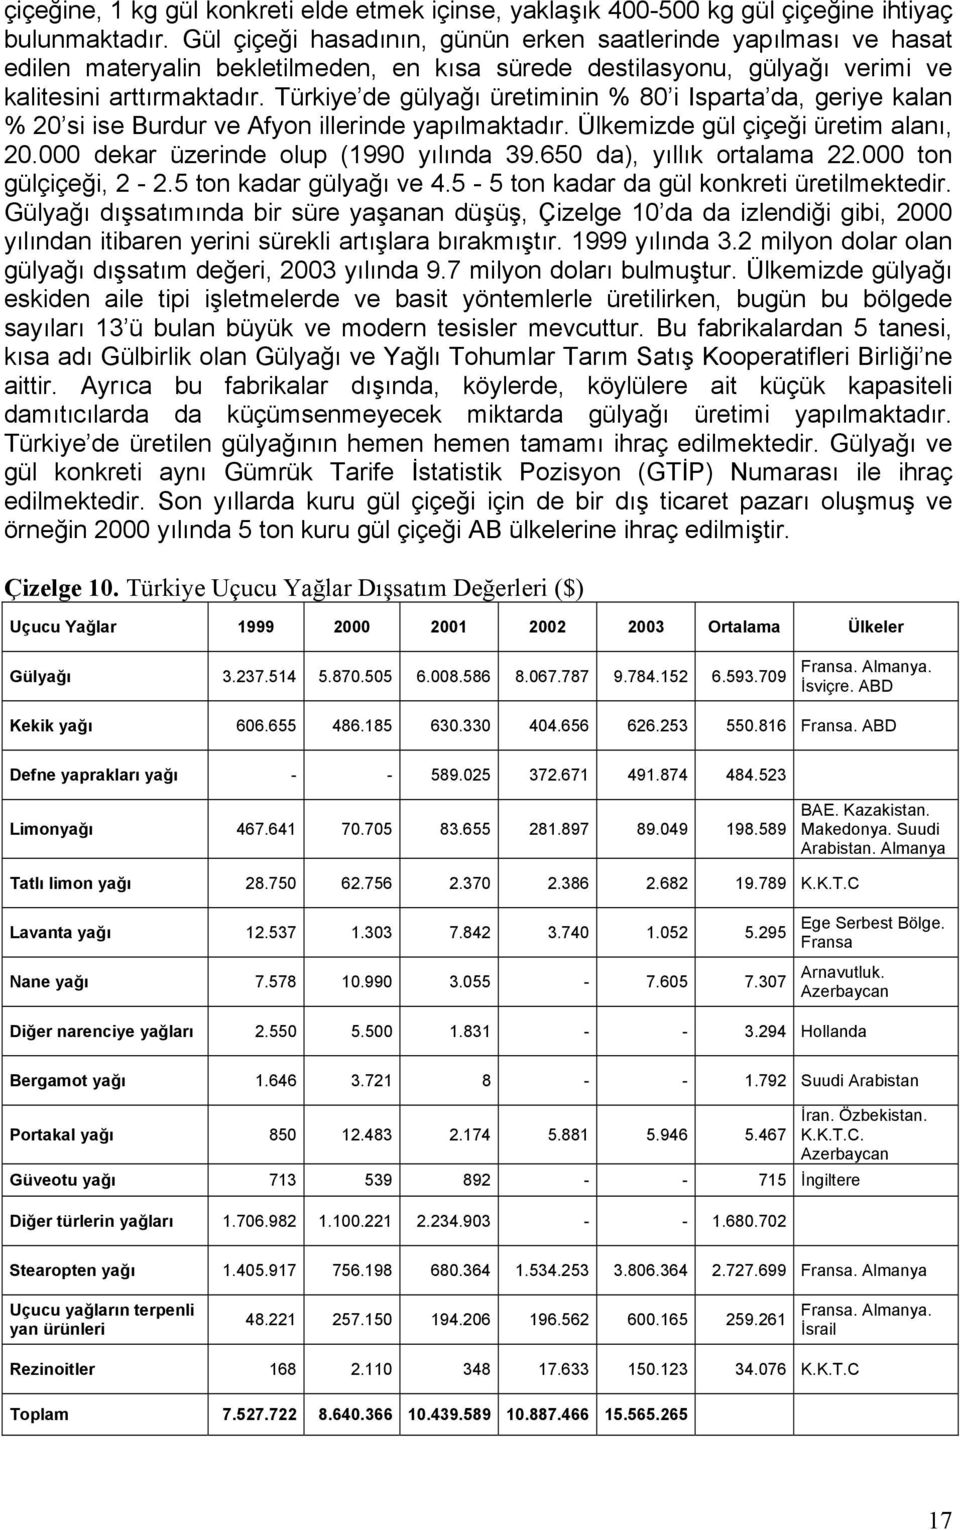 Türkiye de gülyağı üretiminin % 80 i Isparta da, geriye kalan % 20 si ise Burdur ve Afyon illerinde yapılmaktadır. Ülkemizde gül çiçeği üretim alanı, 20.000 dekar üzerinde olup (1990 yılında 39.